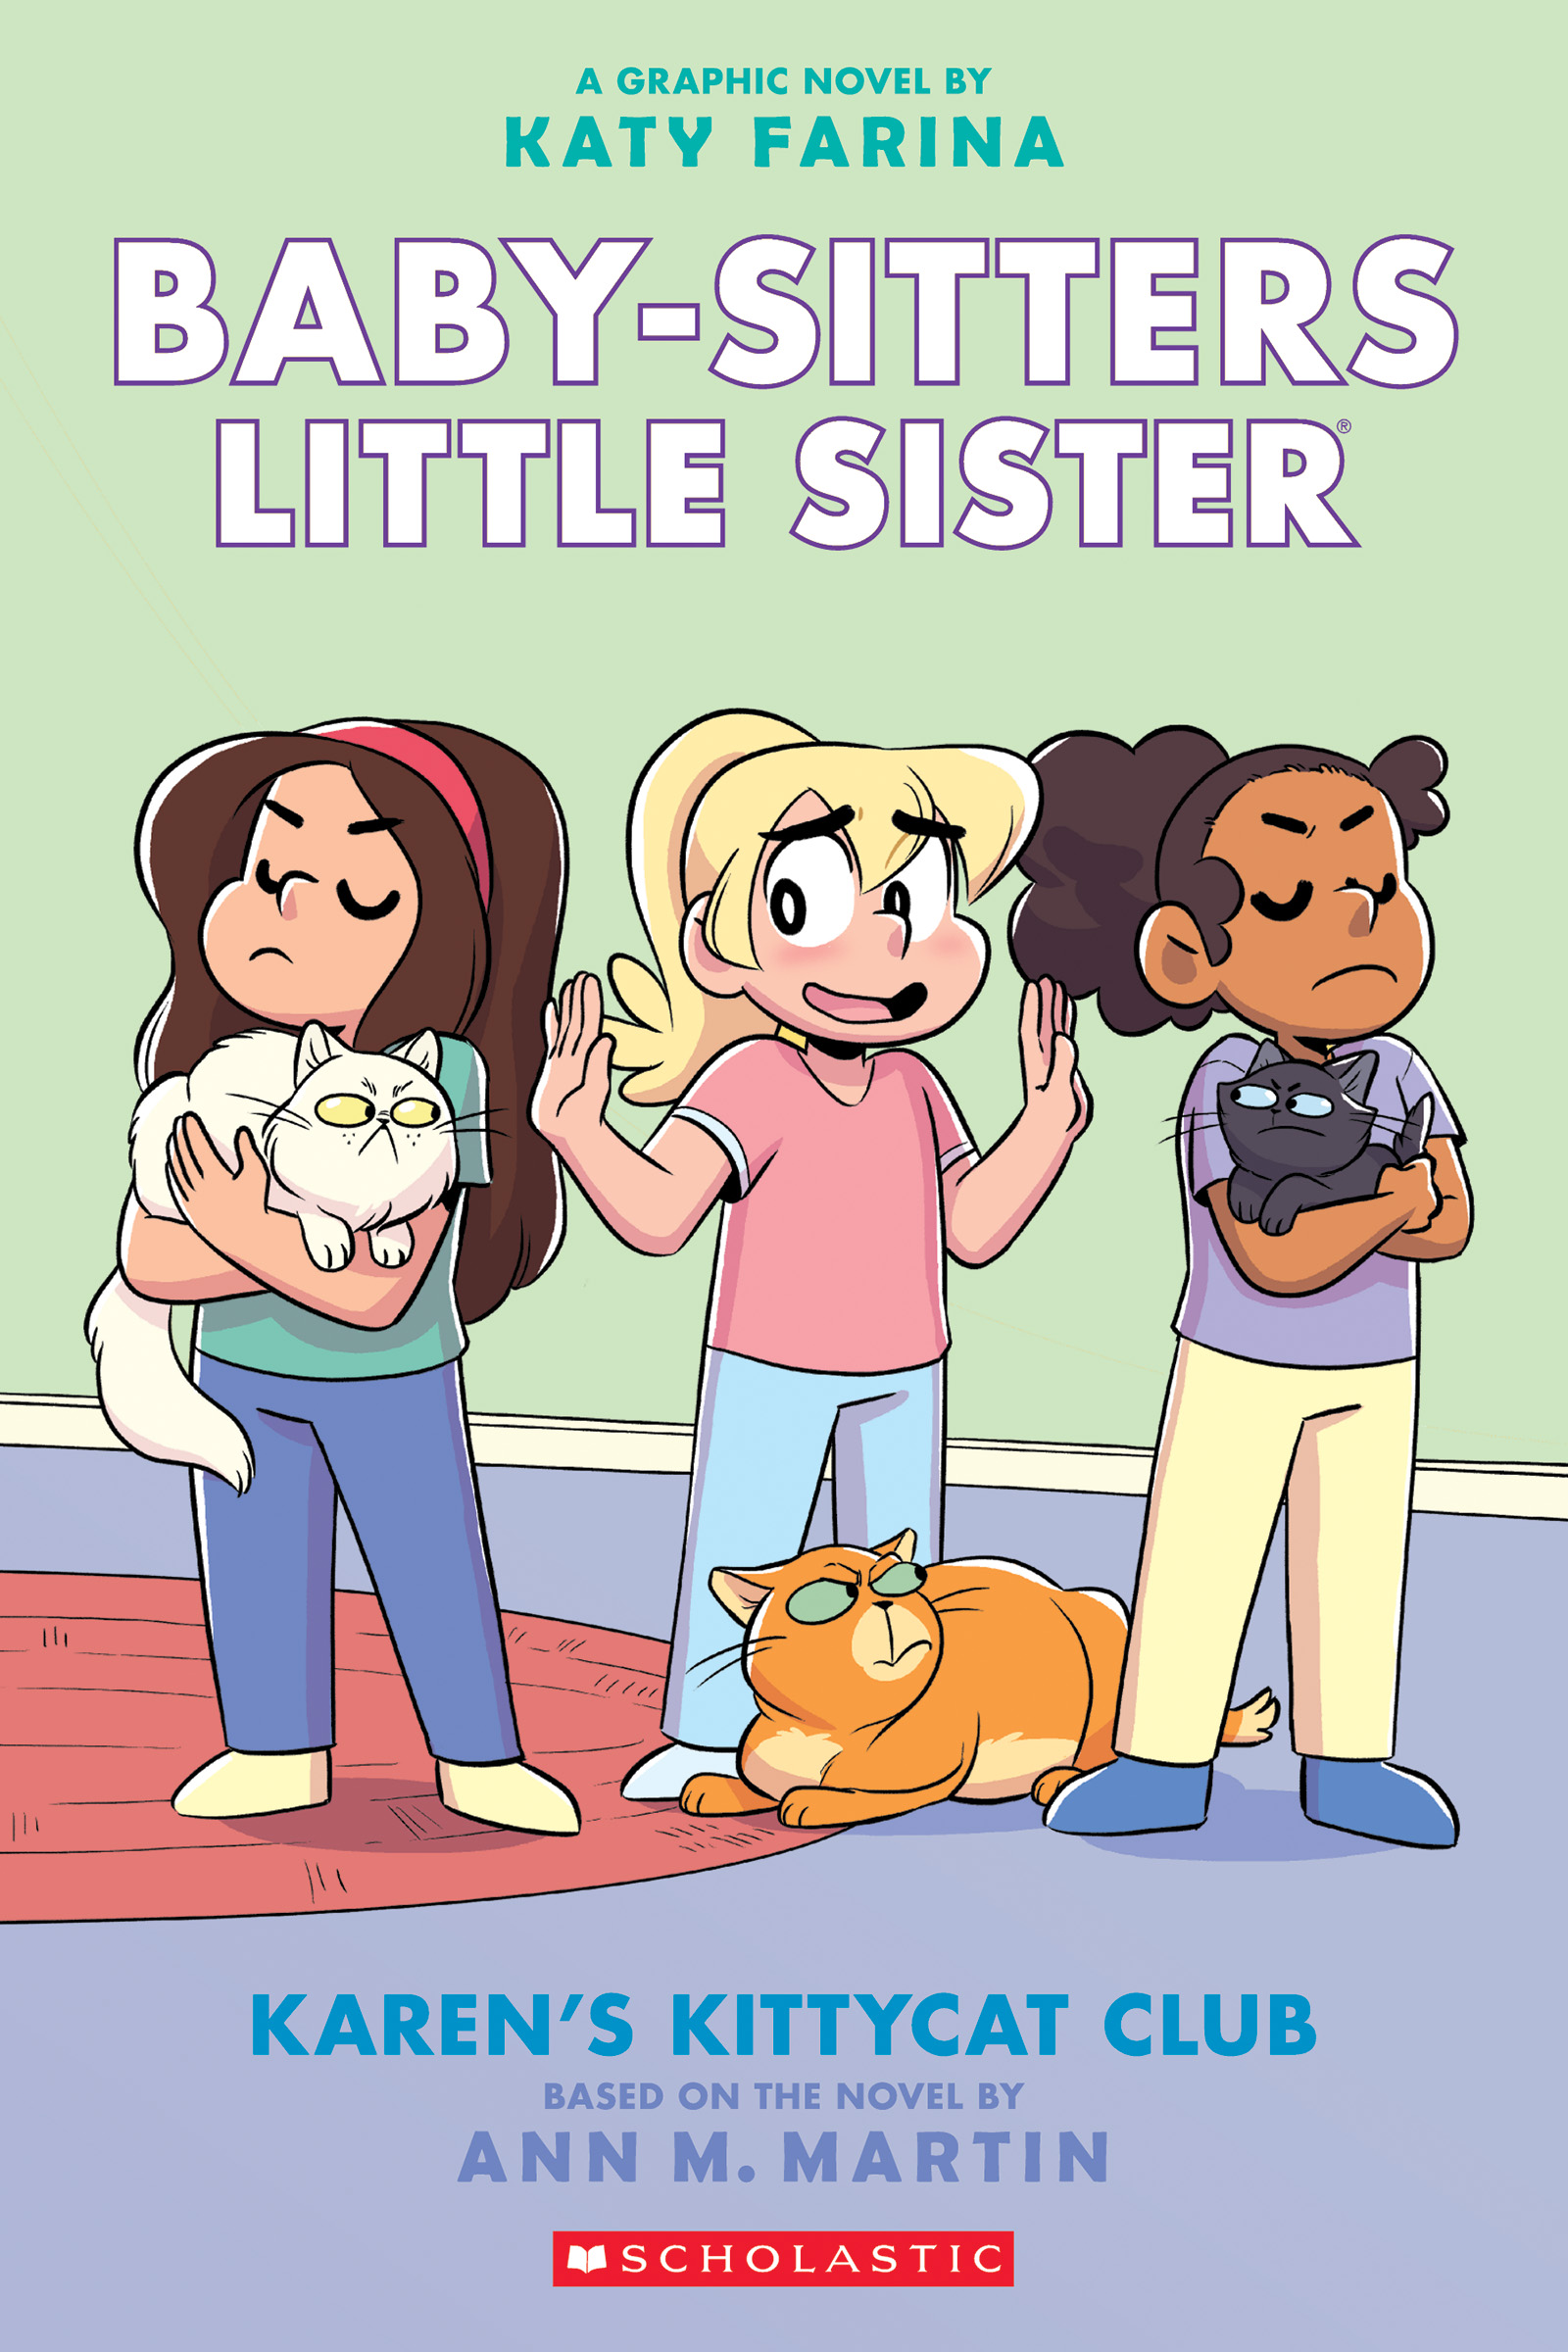 Karen's Kittycat Club a graphic novel